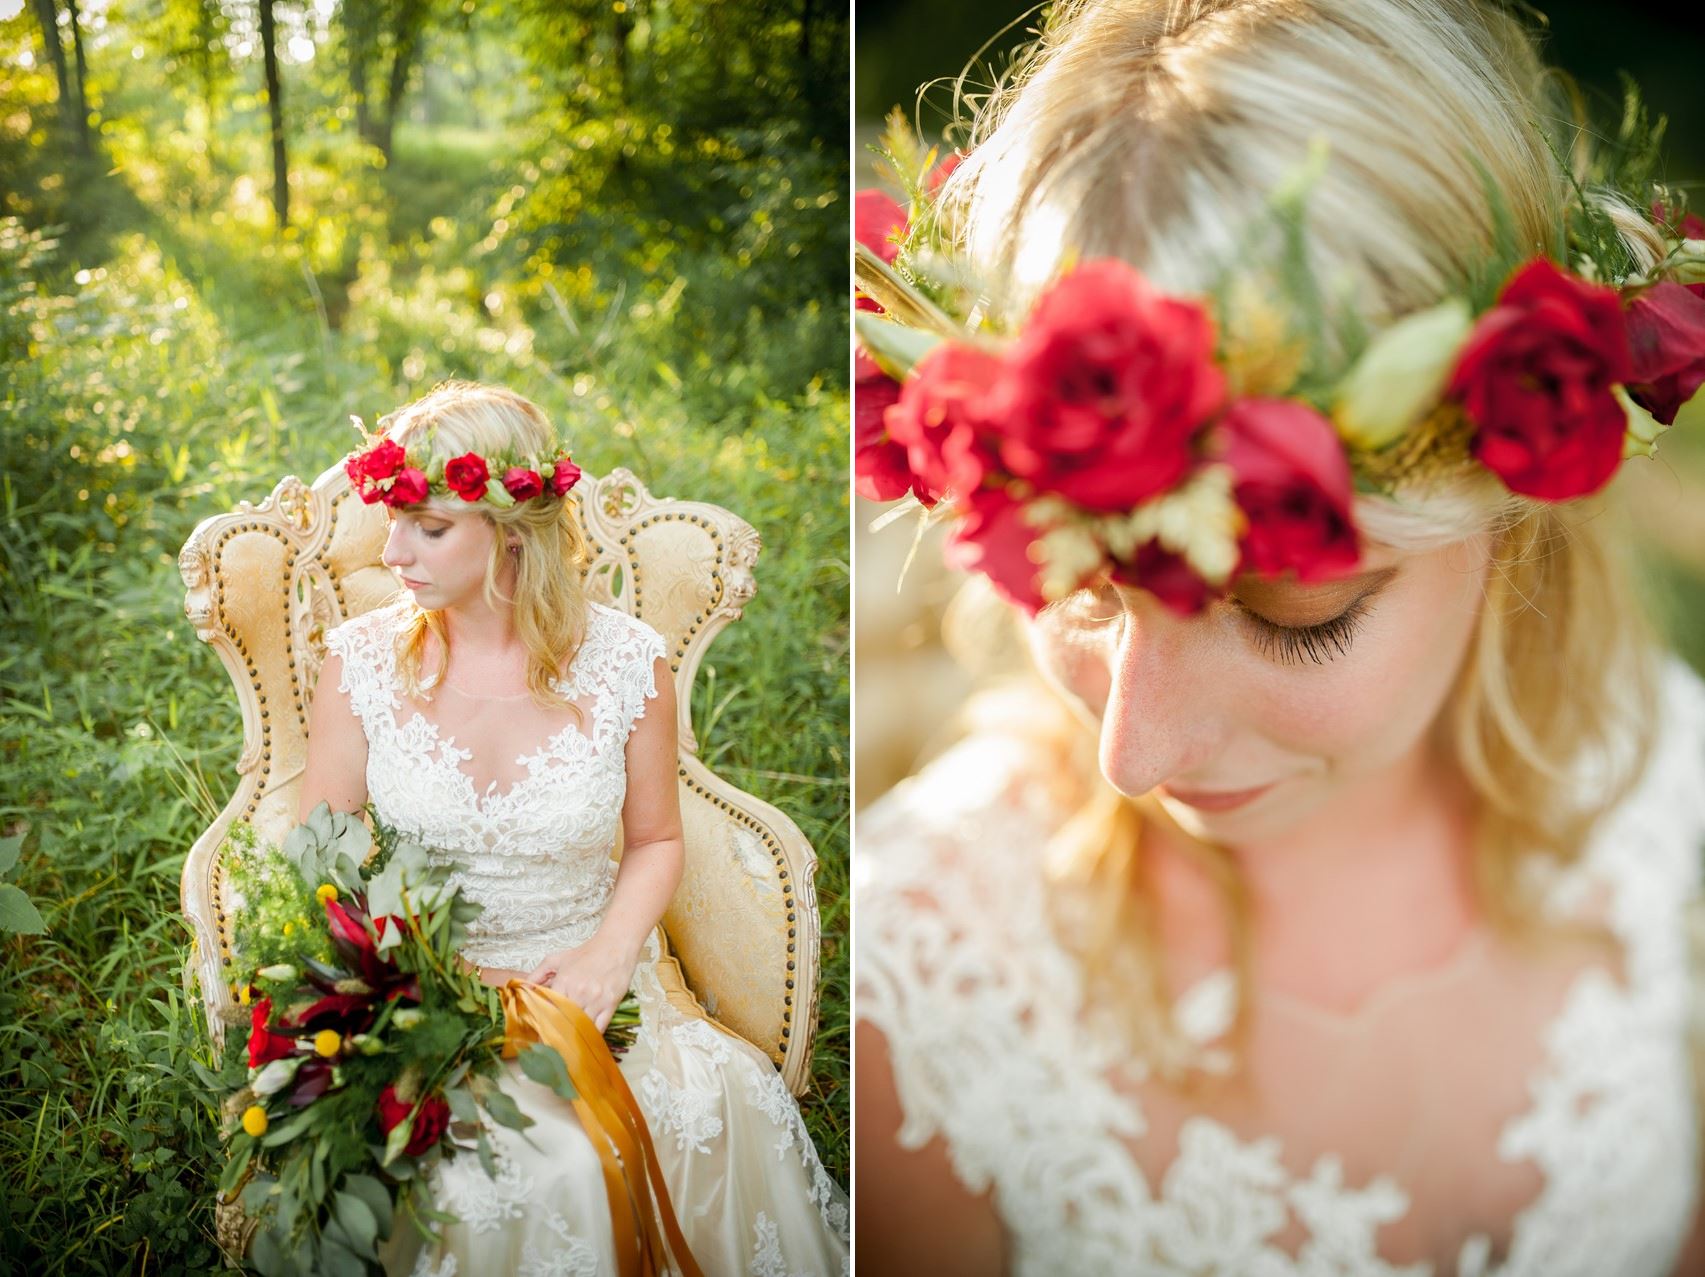 Rose Flower Crown - Boho Vintage Wedding Inspiration in Red, Green & Gold